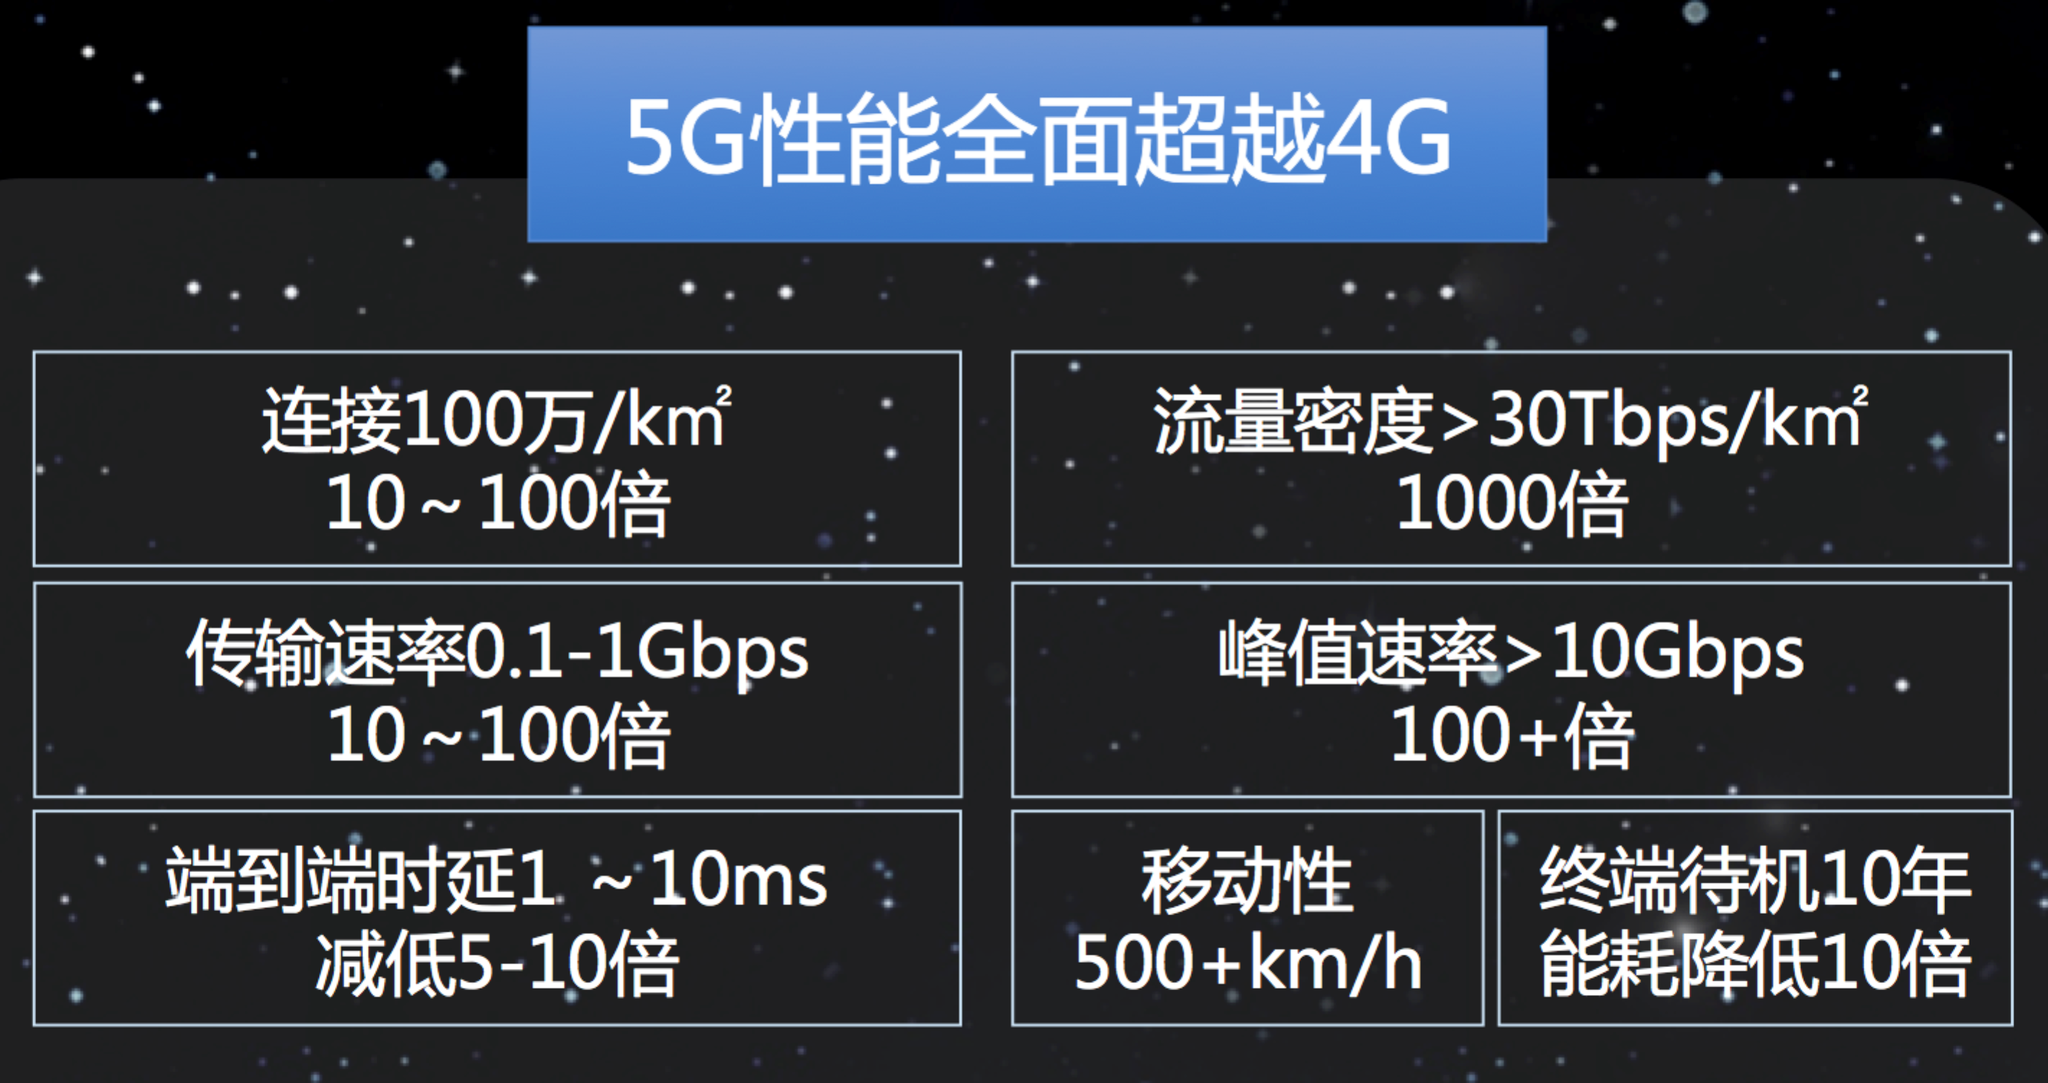 中国联通上海分公司打造5G足球场-国务院国有